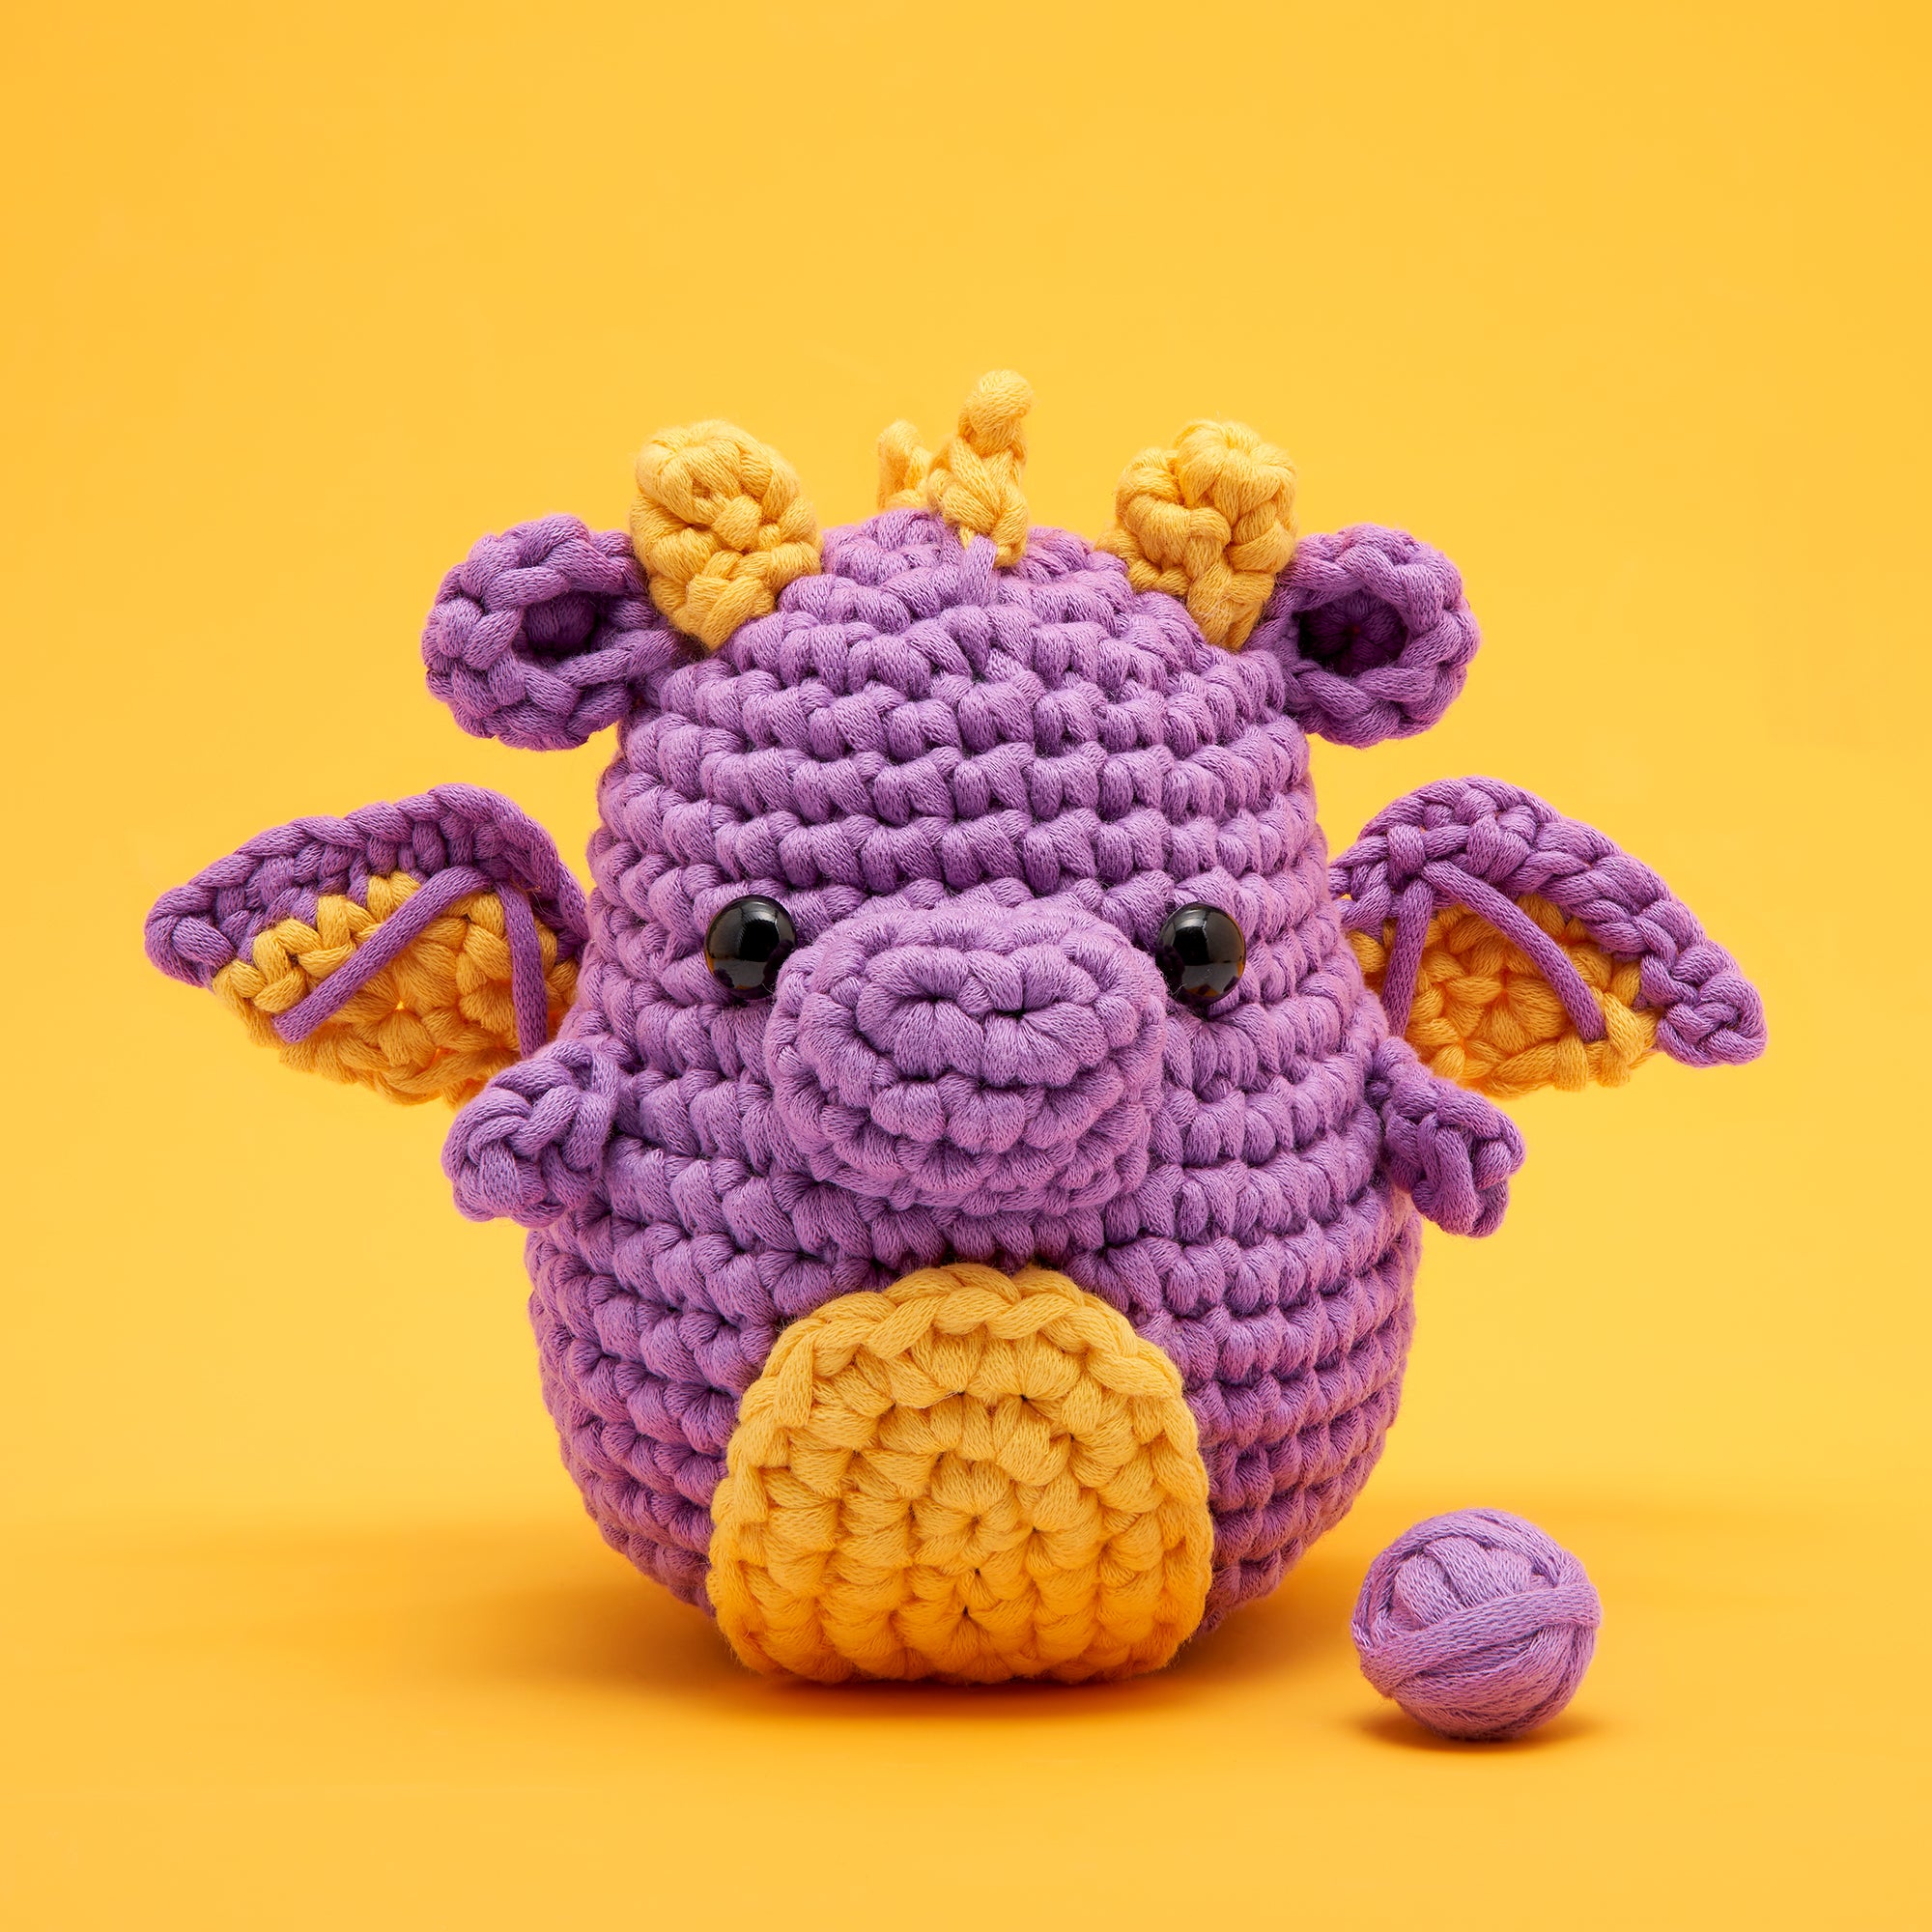 Beginner Learn to Crochet Kit Chick Duck the Woobles Easy Crochet Starter Kit  Crochet Plushie Kit Amigurumi Kit DIY Craft Kit Gift 